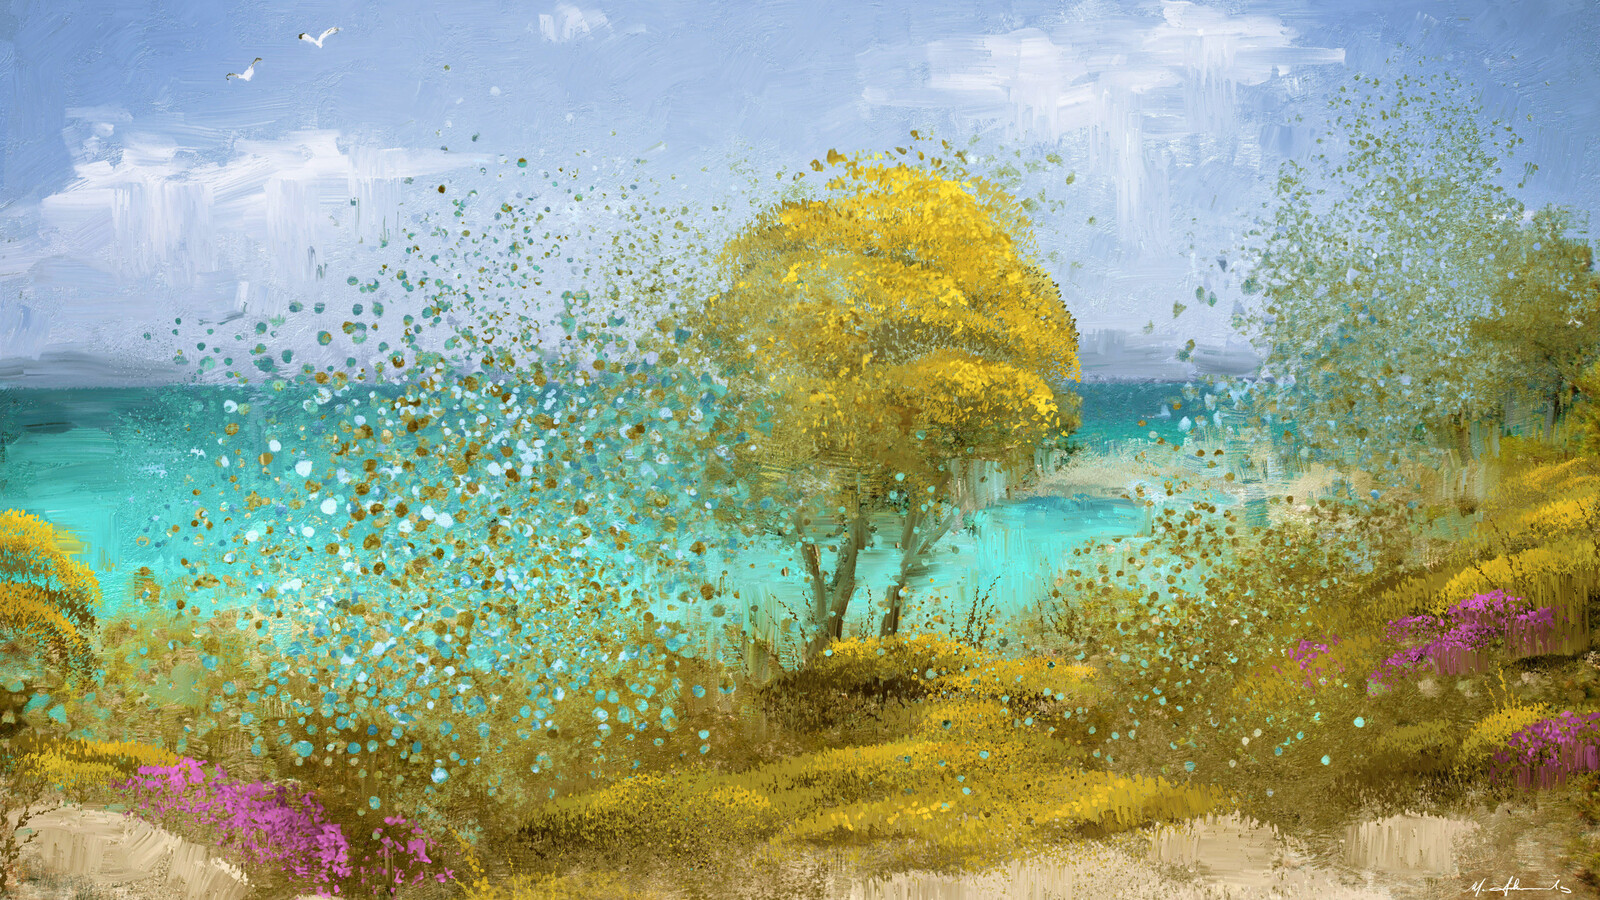 Dream of a Greek Beach - Summer Wallpaper